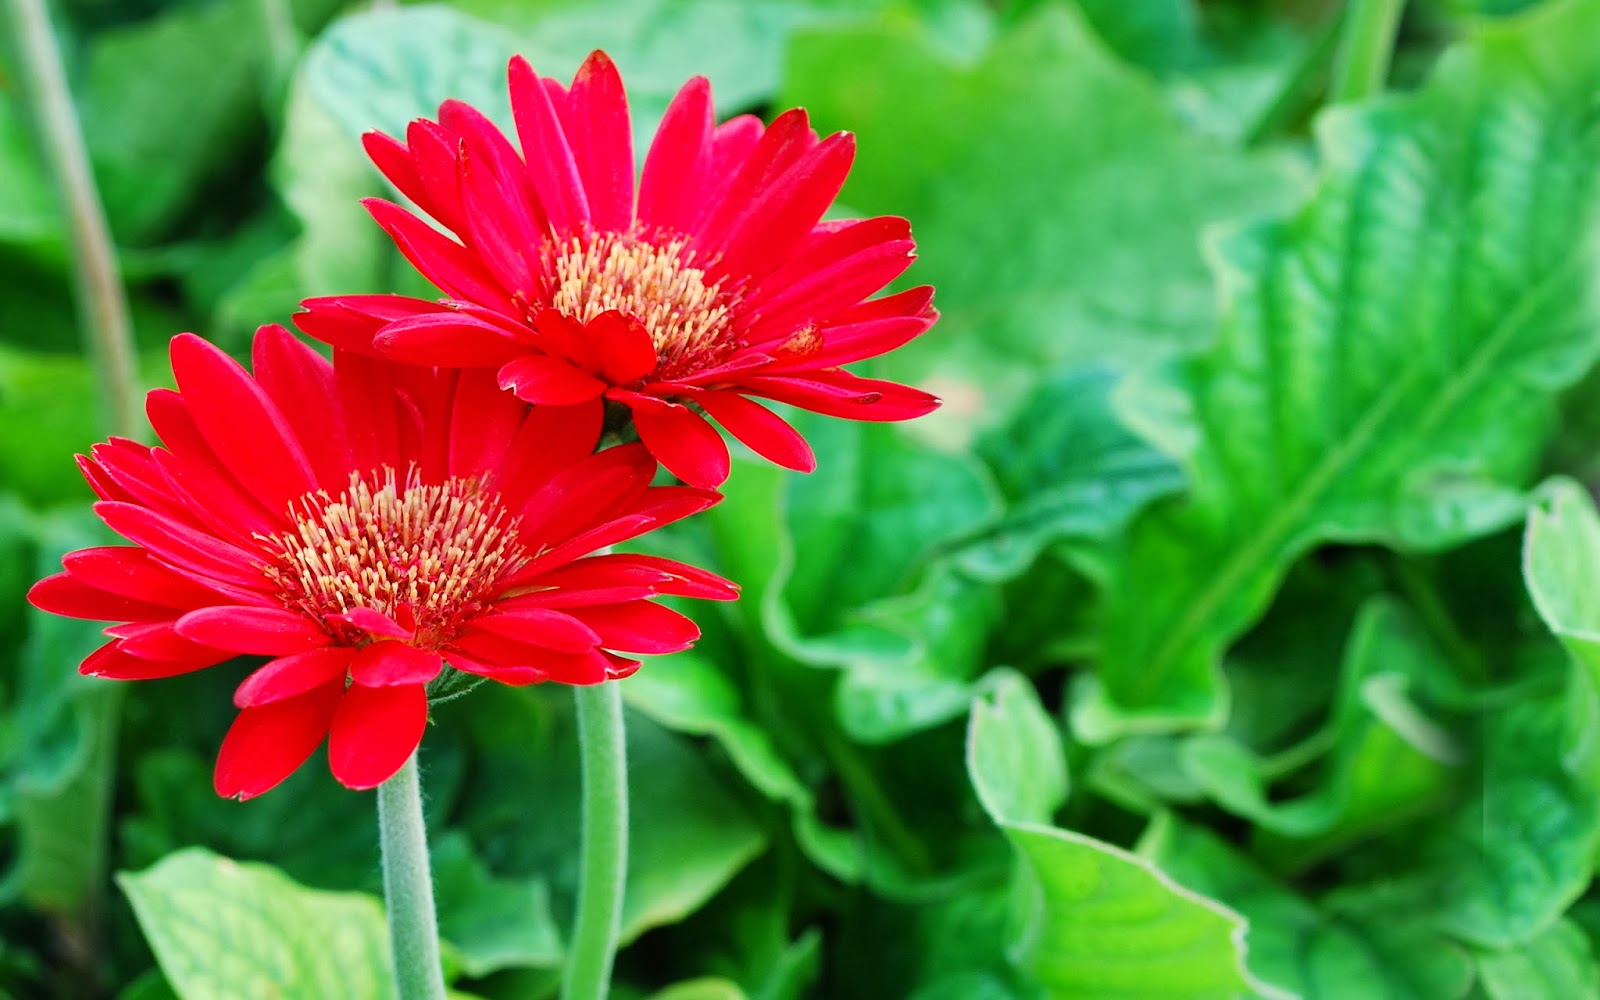 Kho lạnh bảo quản hoa tươi giá rẻ công nghệ cao | CT VIỆT NAM